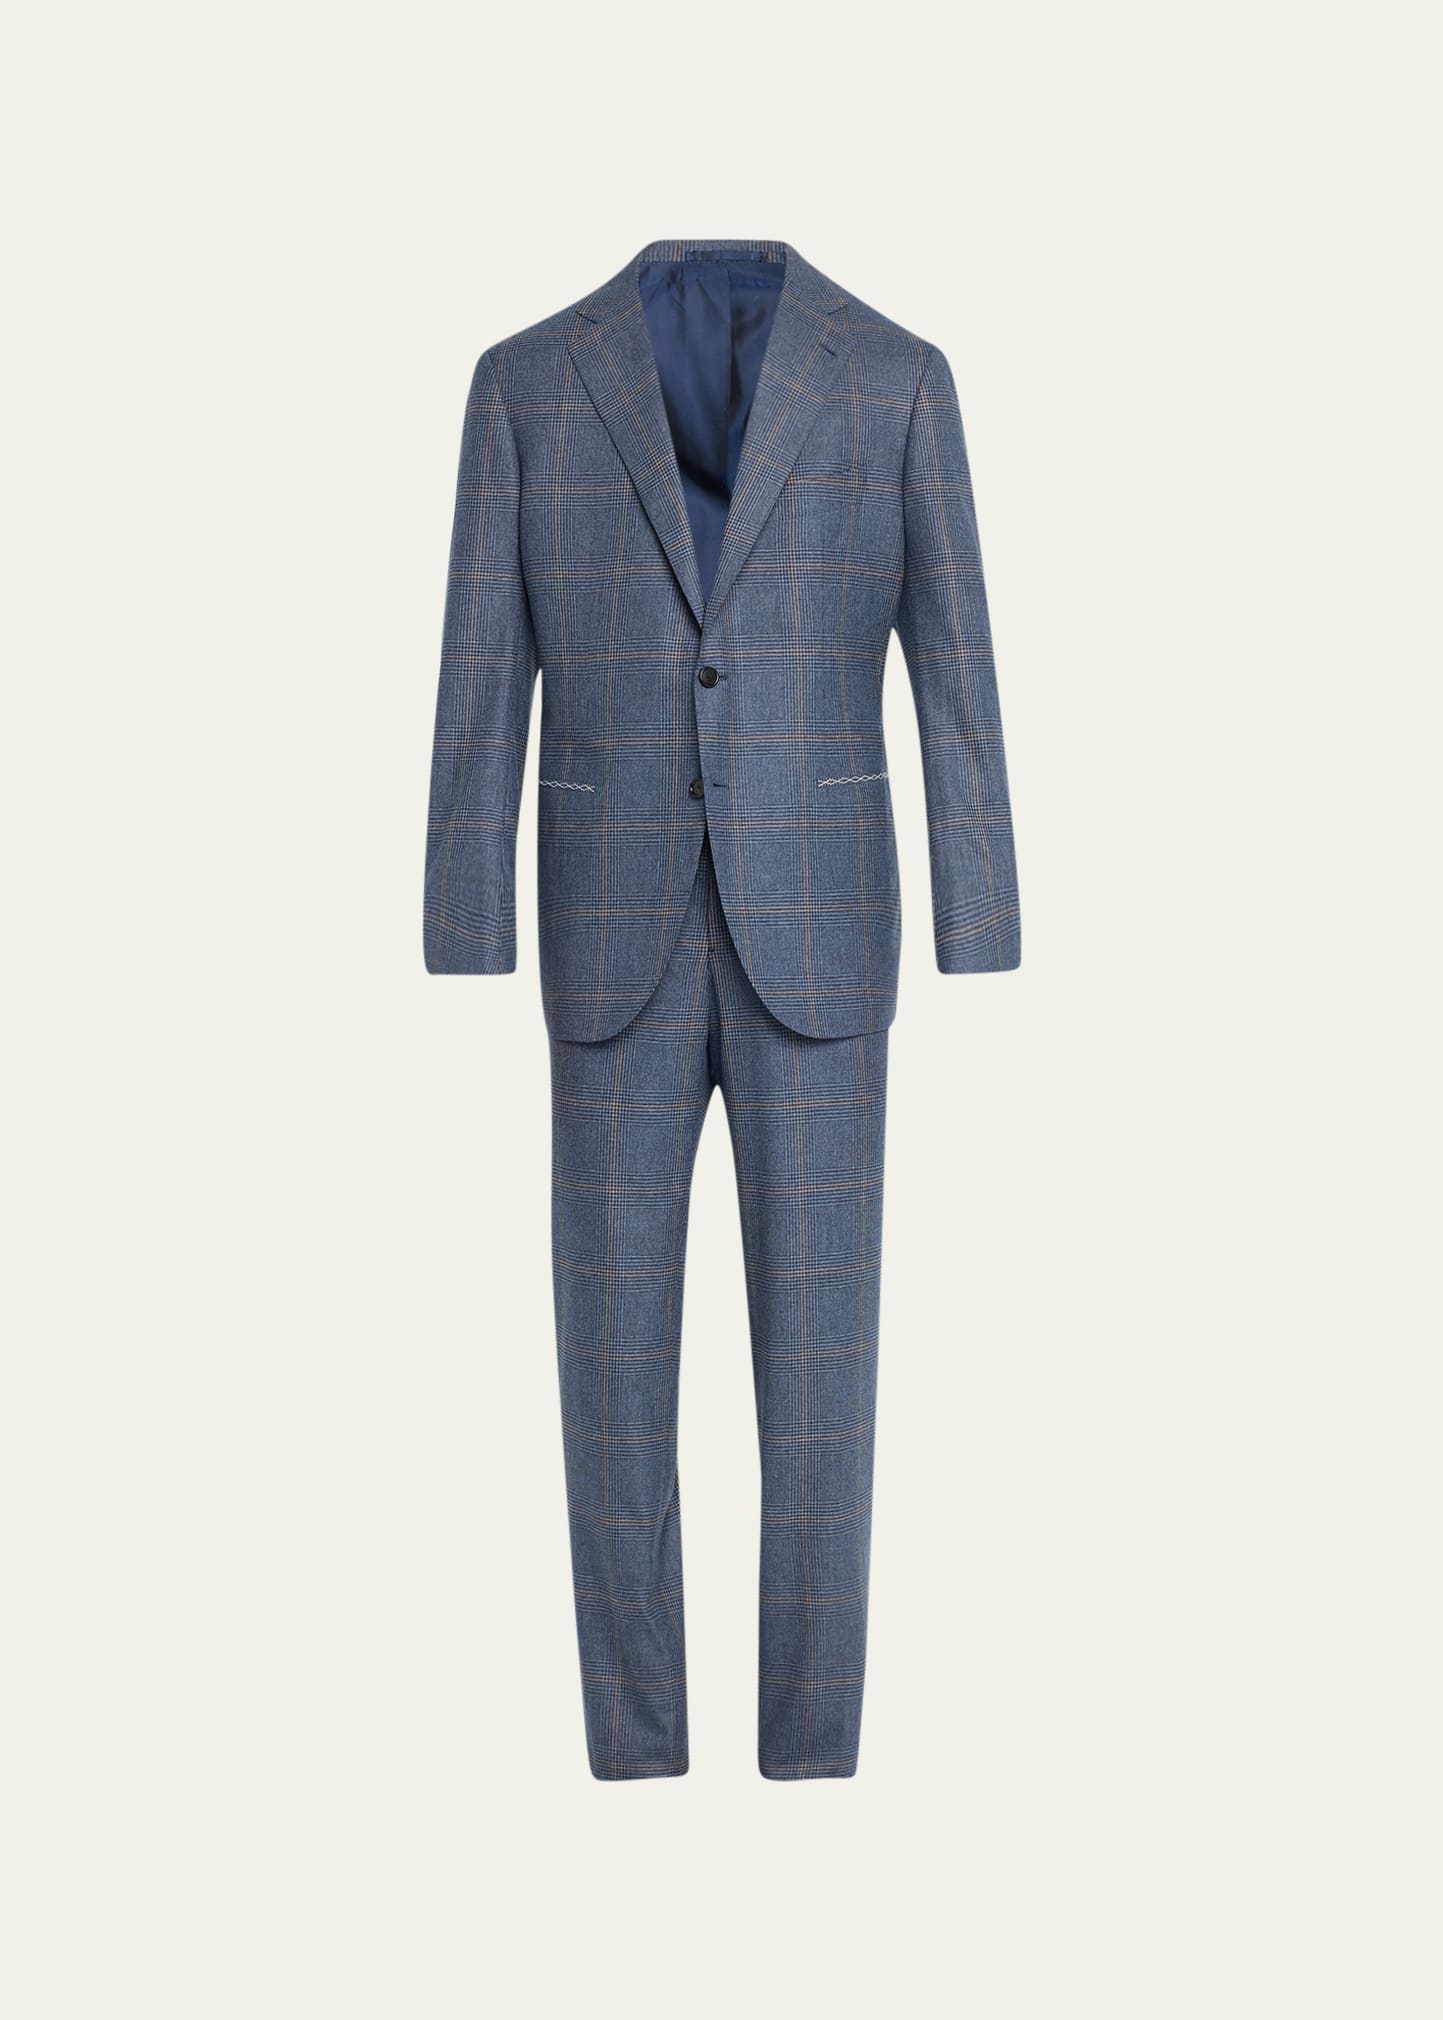 Men's Two-Tone Check Suit